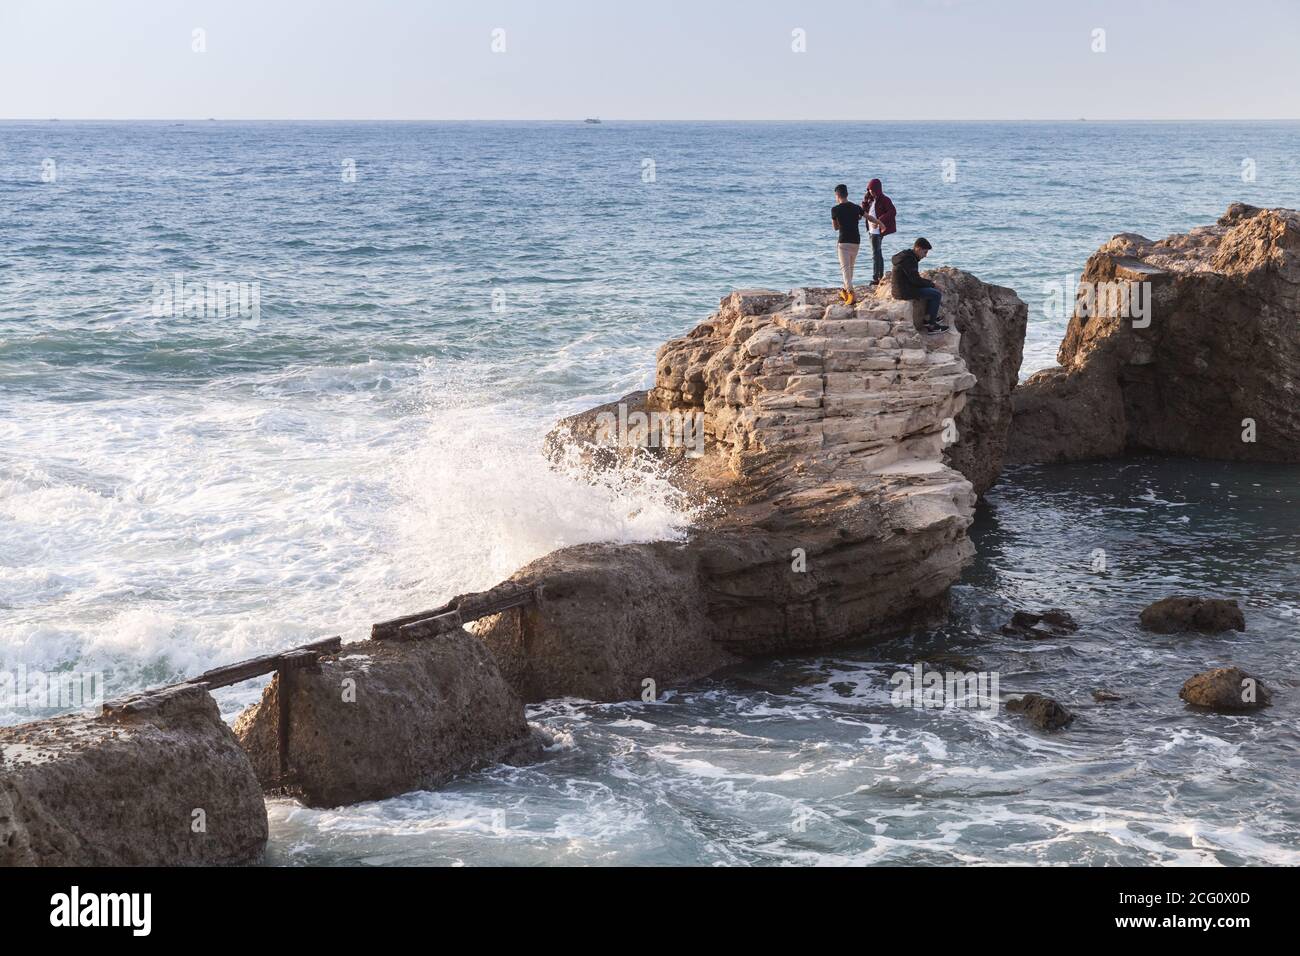 Alessandria, Egitto - 13 dicembre 2018: Paesaggio con fortificazioni costiere in rovina. I ragazzi camminano sulle pietre vicino alle grandi onde che spruzzano Foto Stock